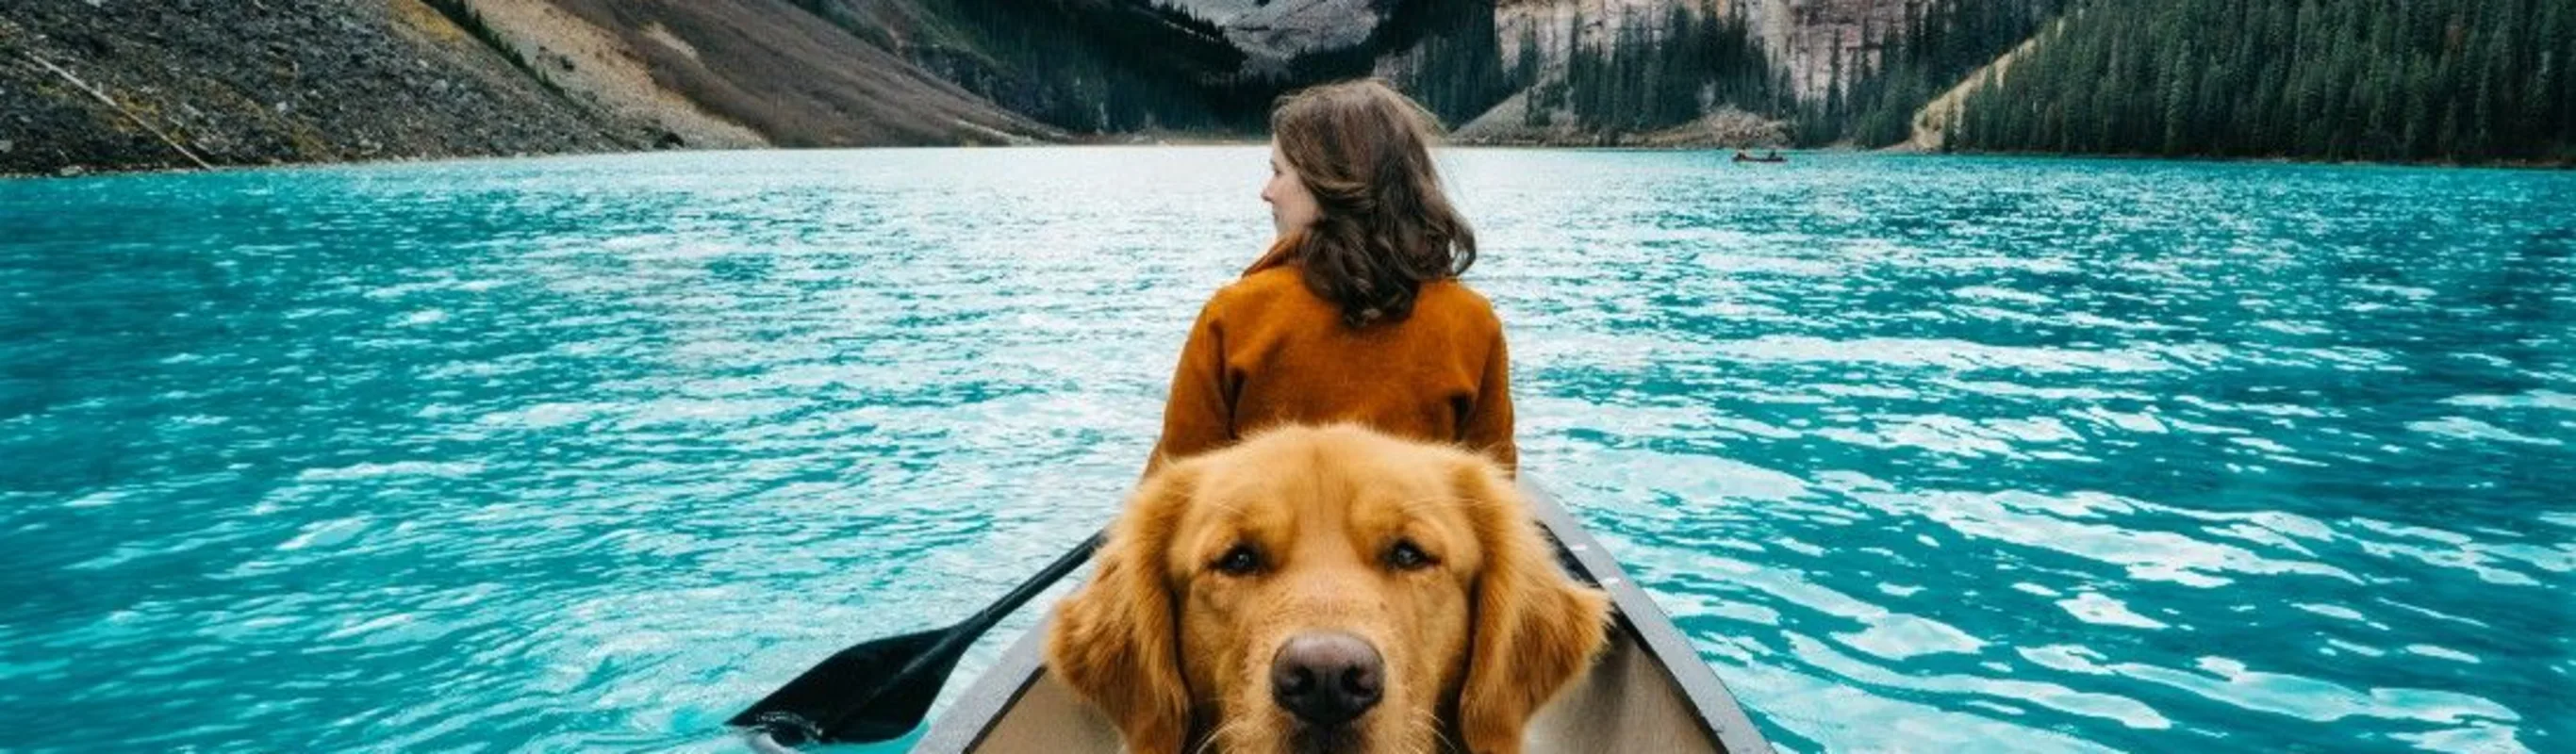 Golden Retriever in a canoe facing the camera